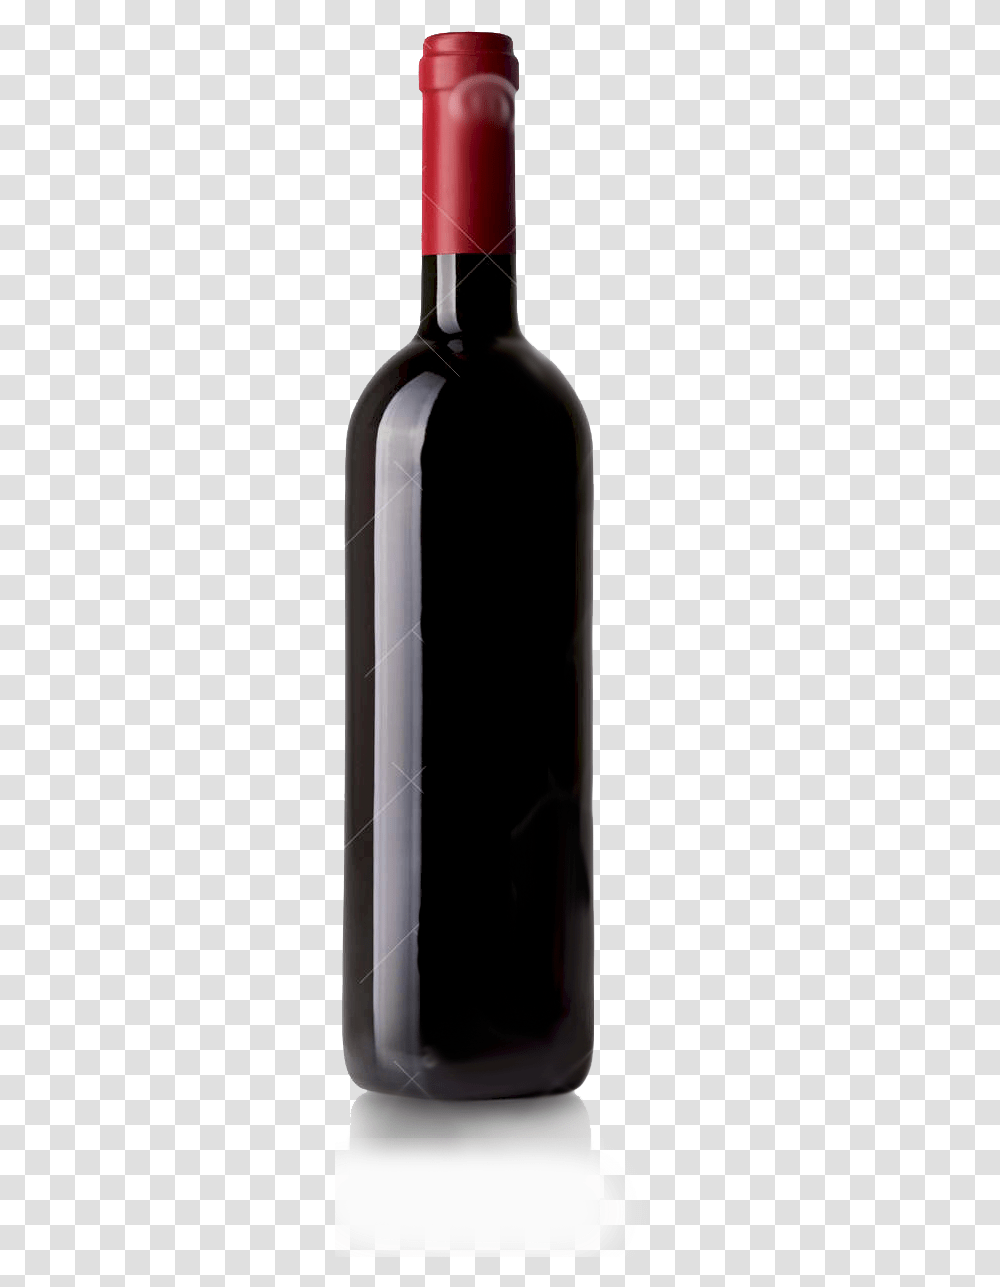 Cartoon Red Wine Bottle, Beverage, Alcohol, Building Transparent Png